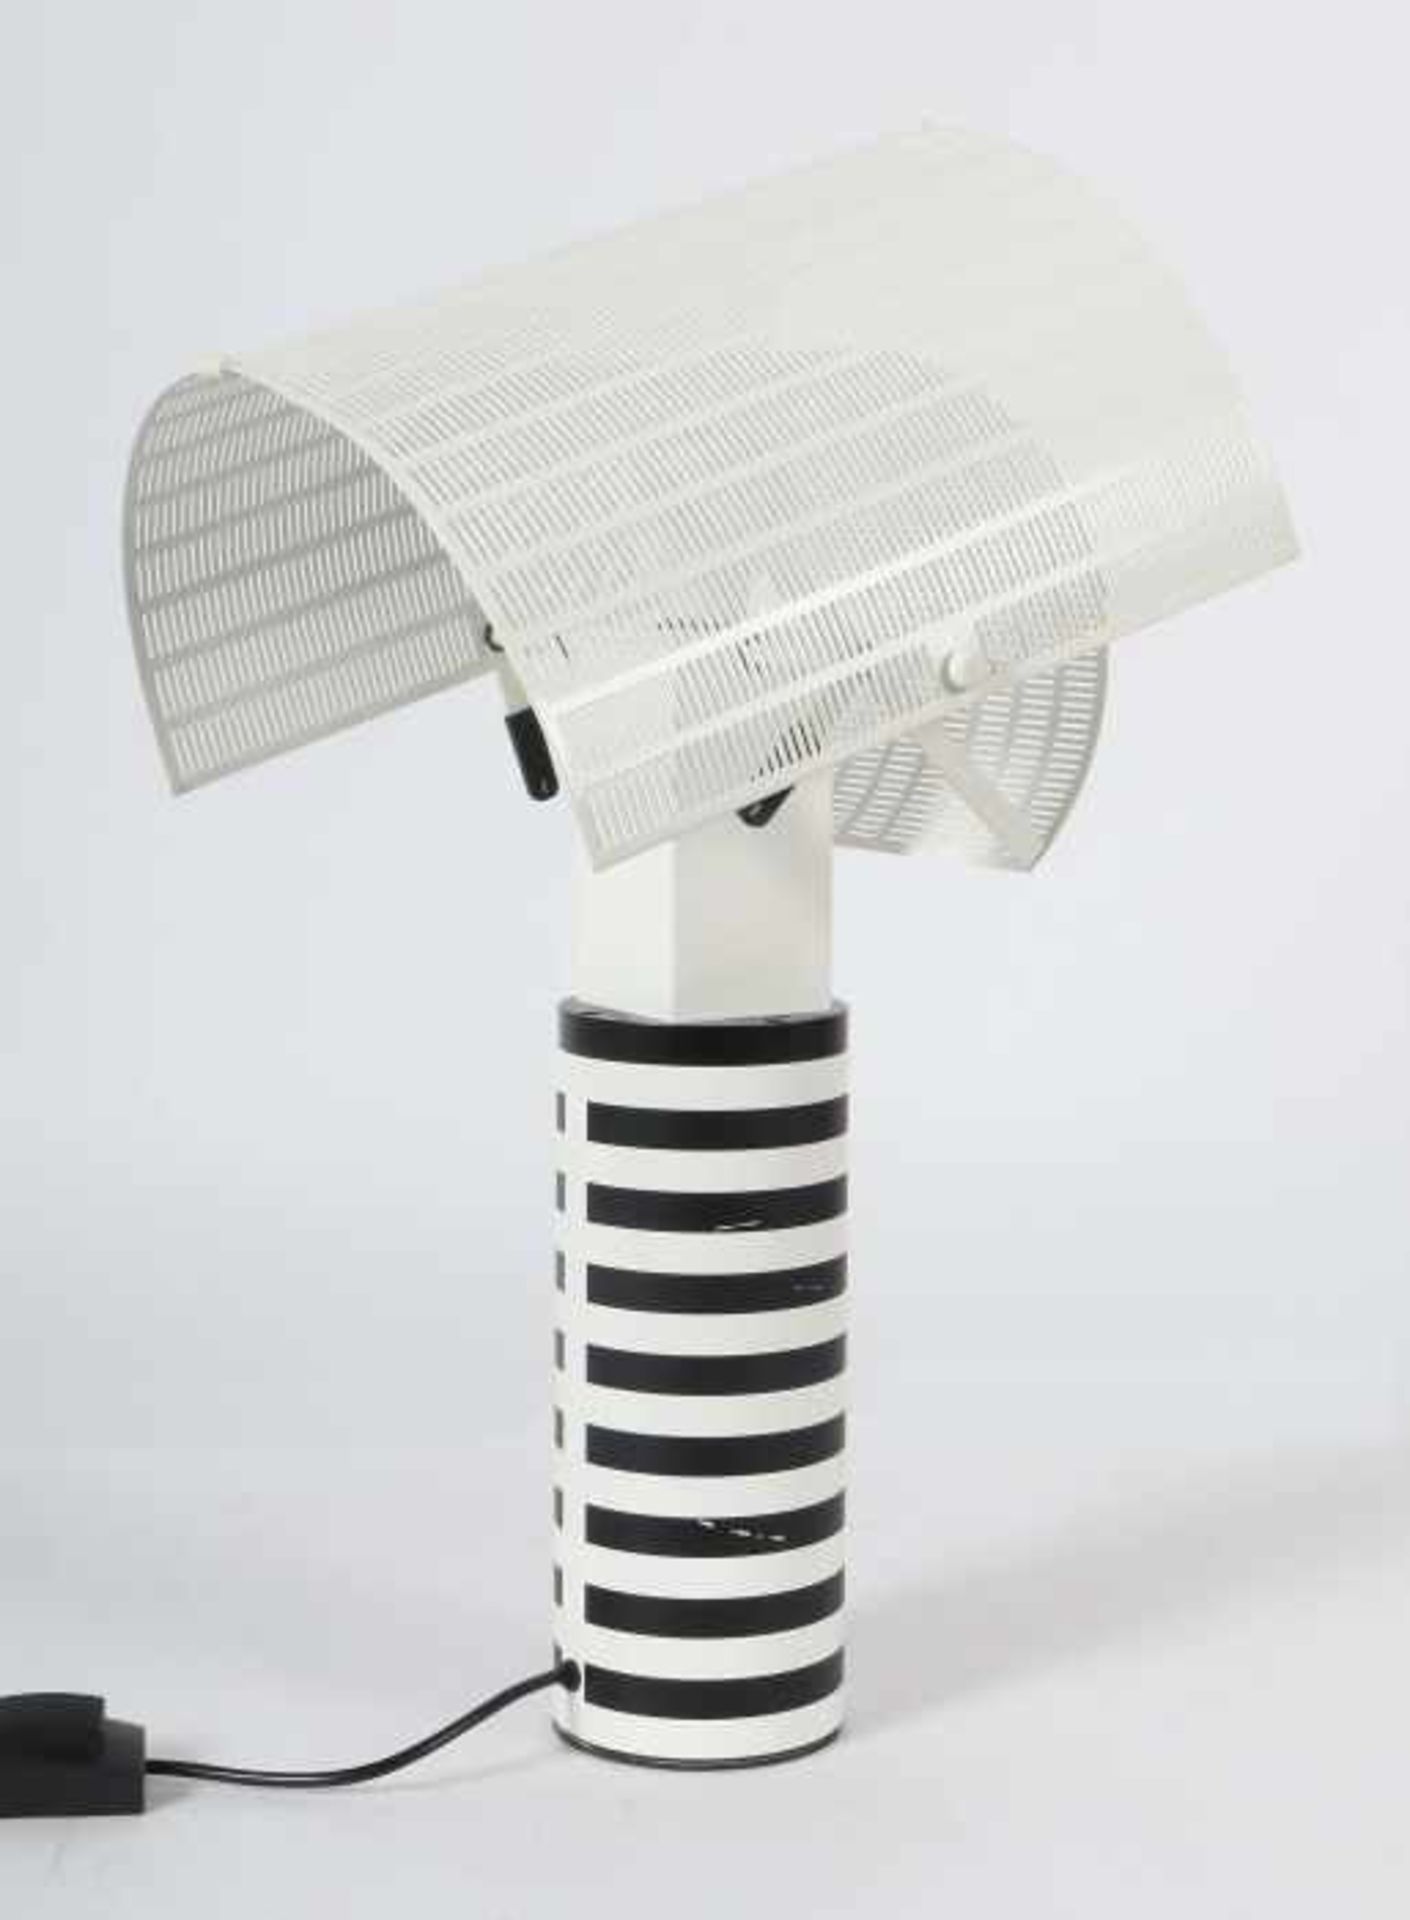 Botta, MarioMendrisio/Schweiz, 1943, Designer. Tischlampe "Shogun", Entwurf: 1986, Ausführung: - Image 2 of 2